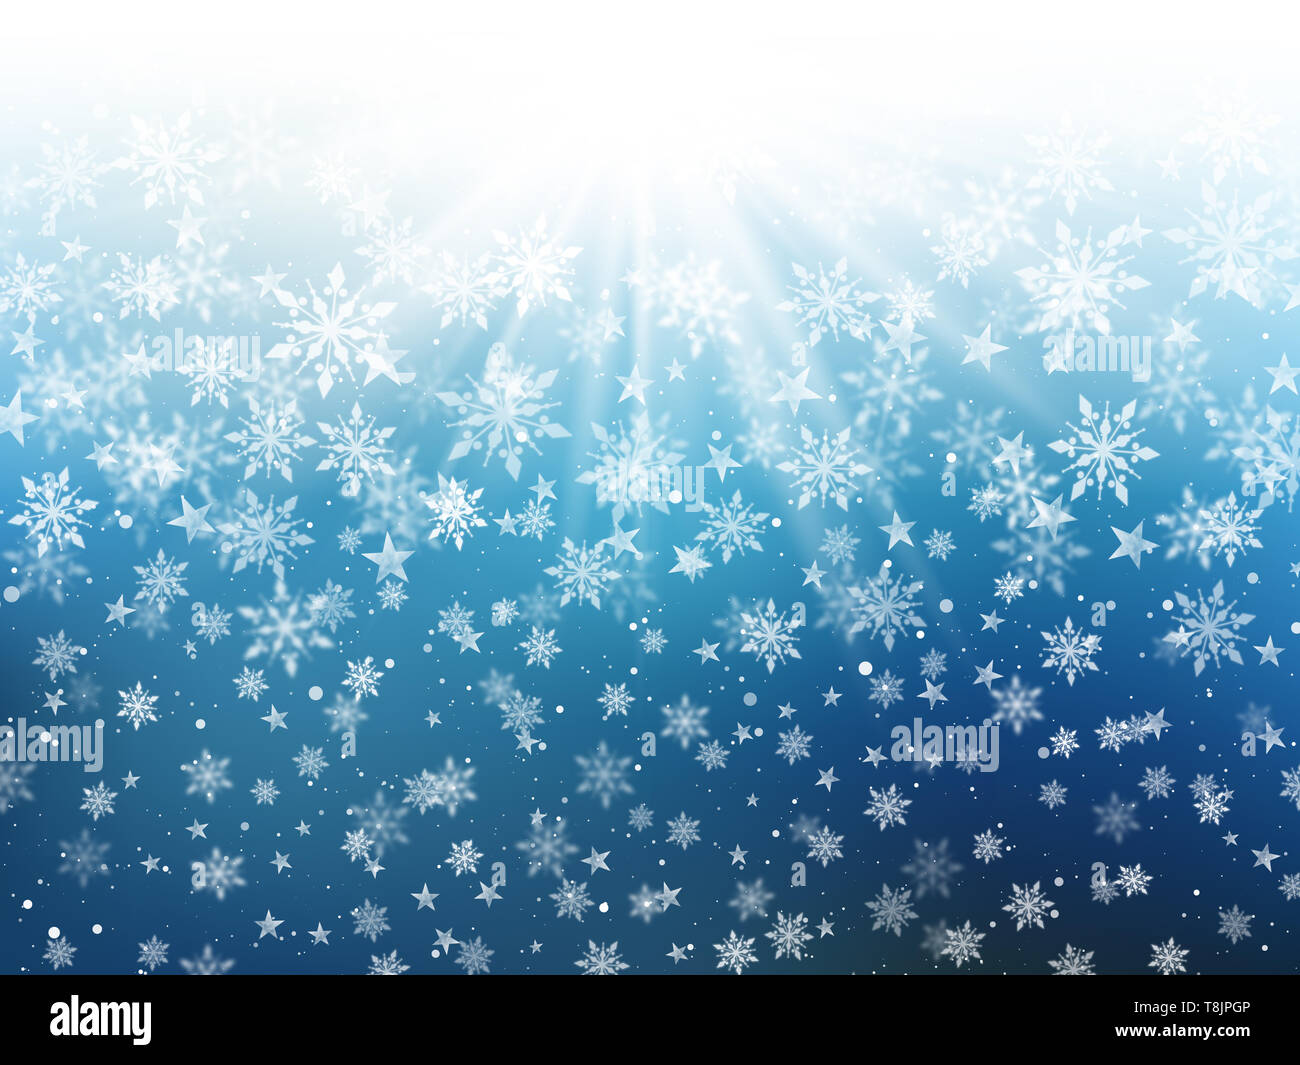 Christmas background de la caída de copos de nieve y estrellas Foto de stock